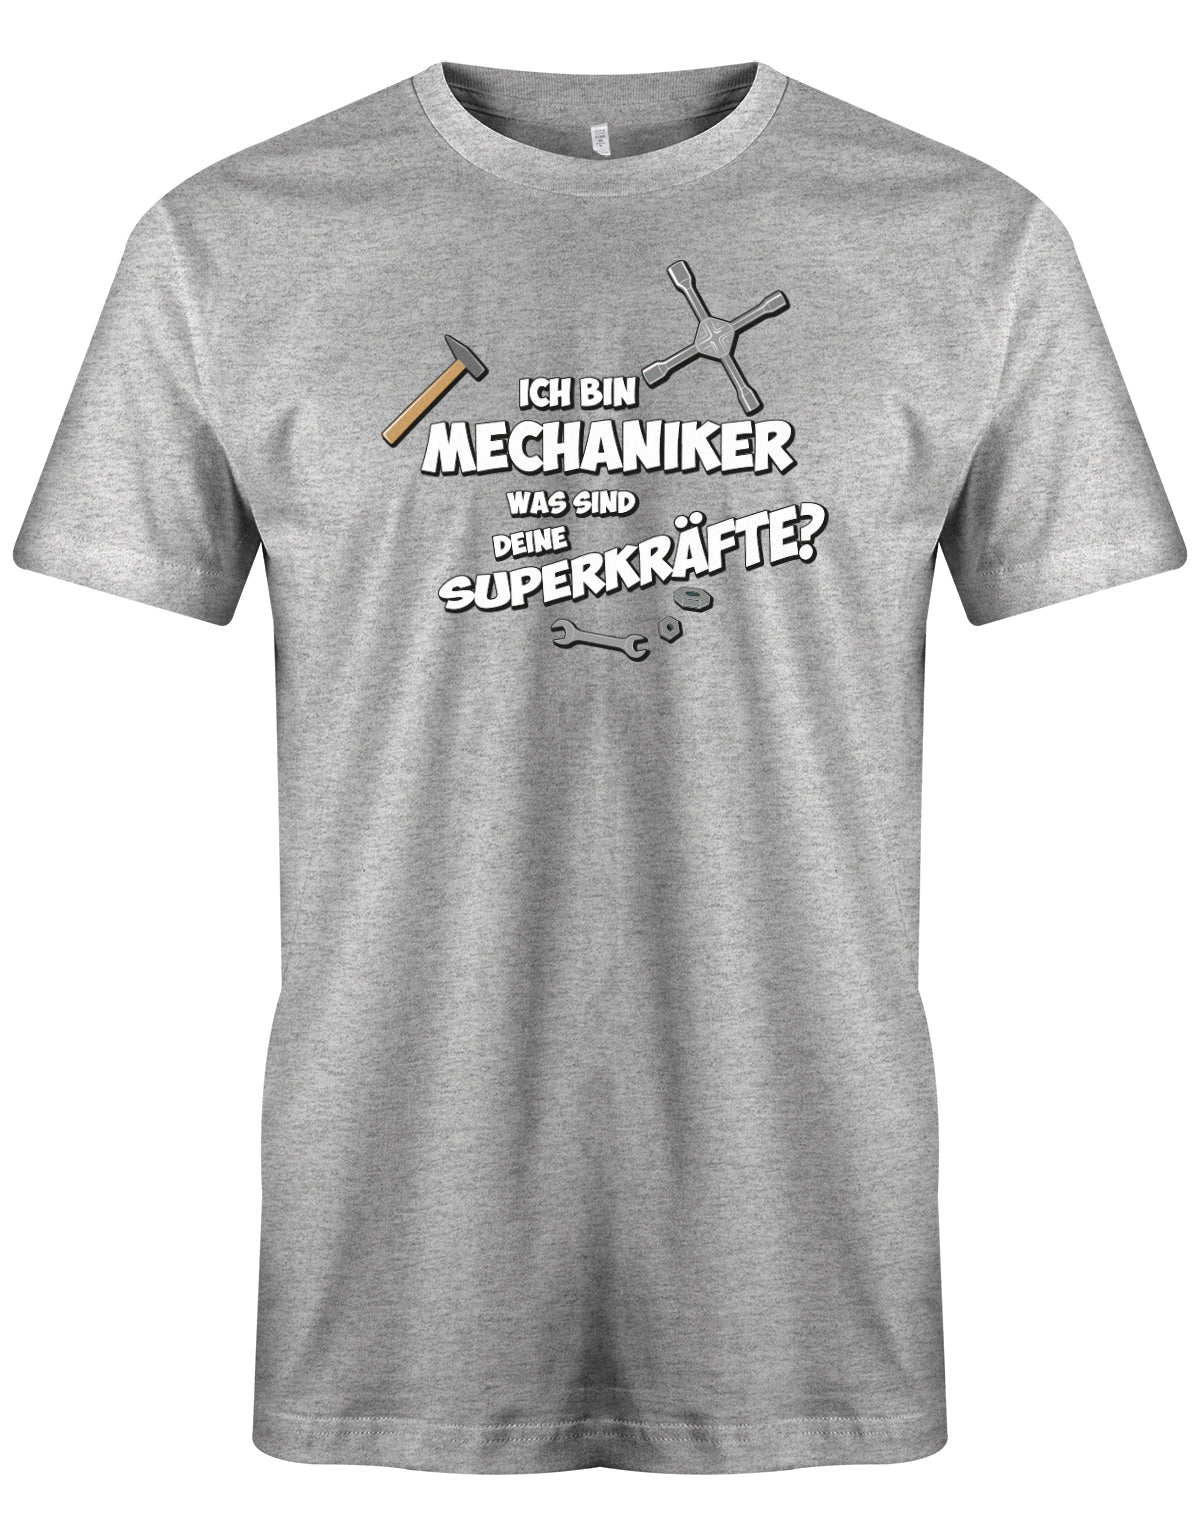 KFZ Mechaniker Shirt - Ich bin Mechaniker was sind deine Superkräfte? Grau